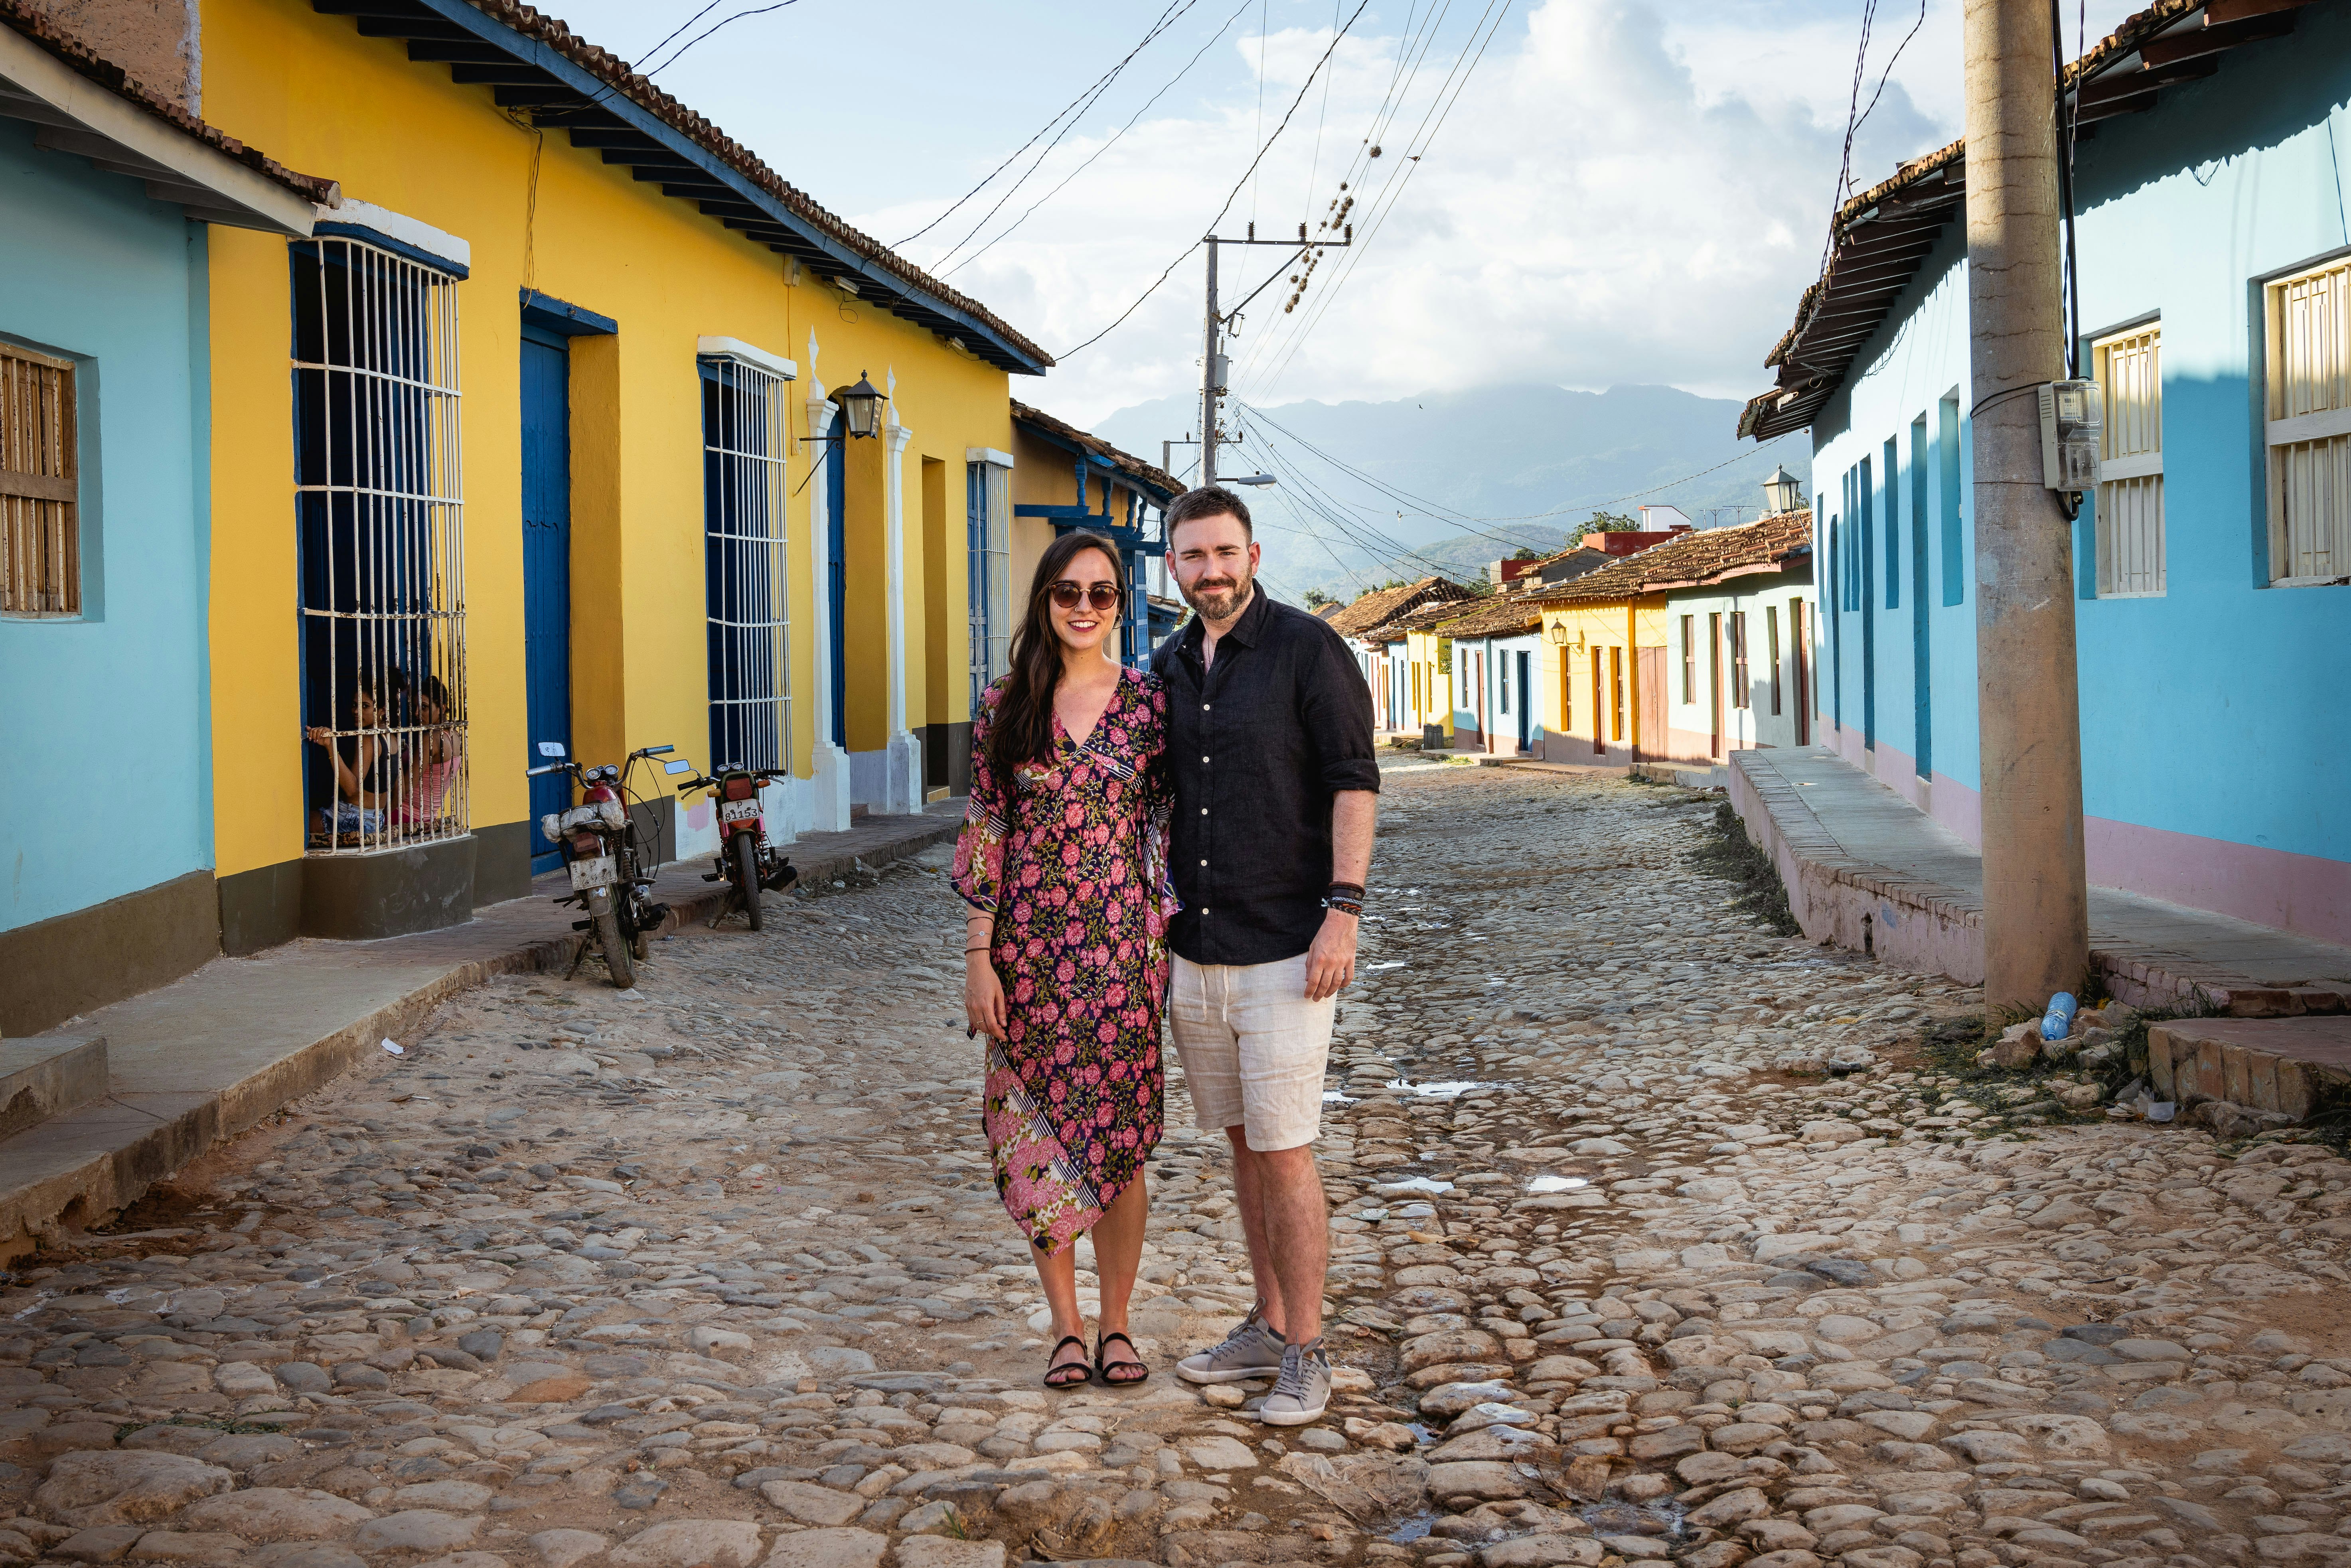 Celia and Jamie in Cuba